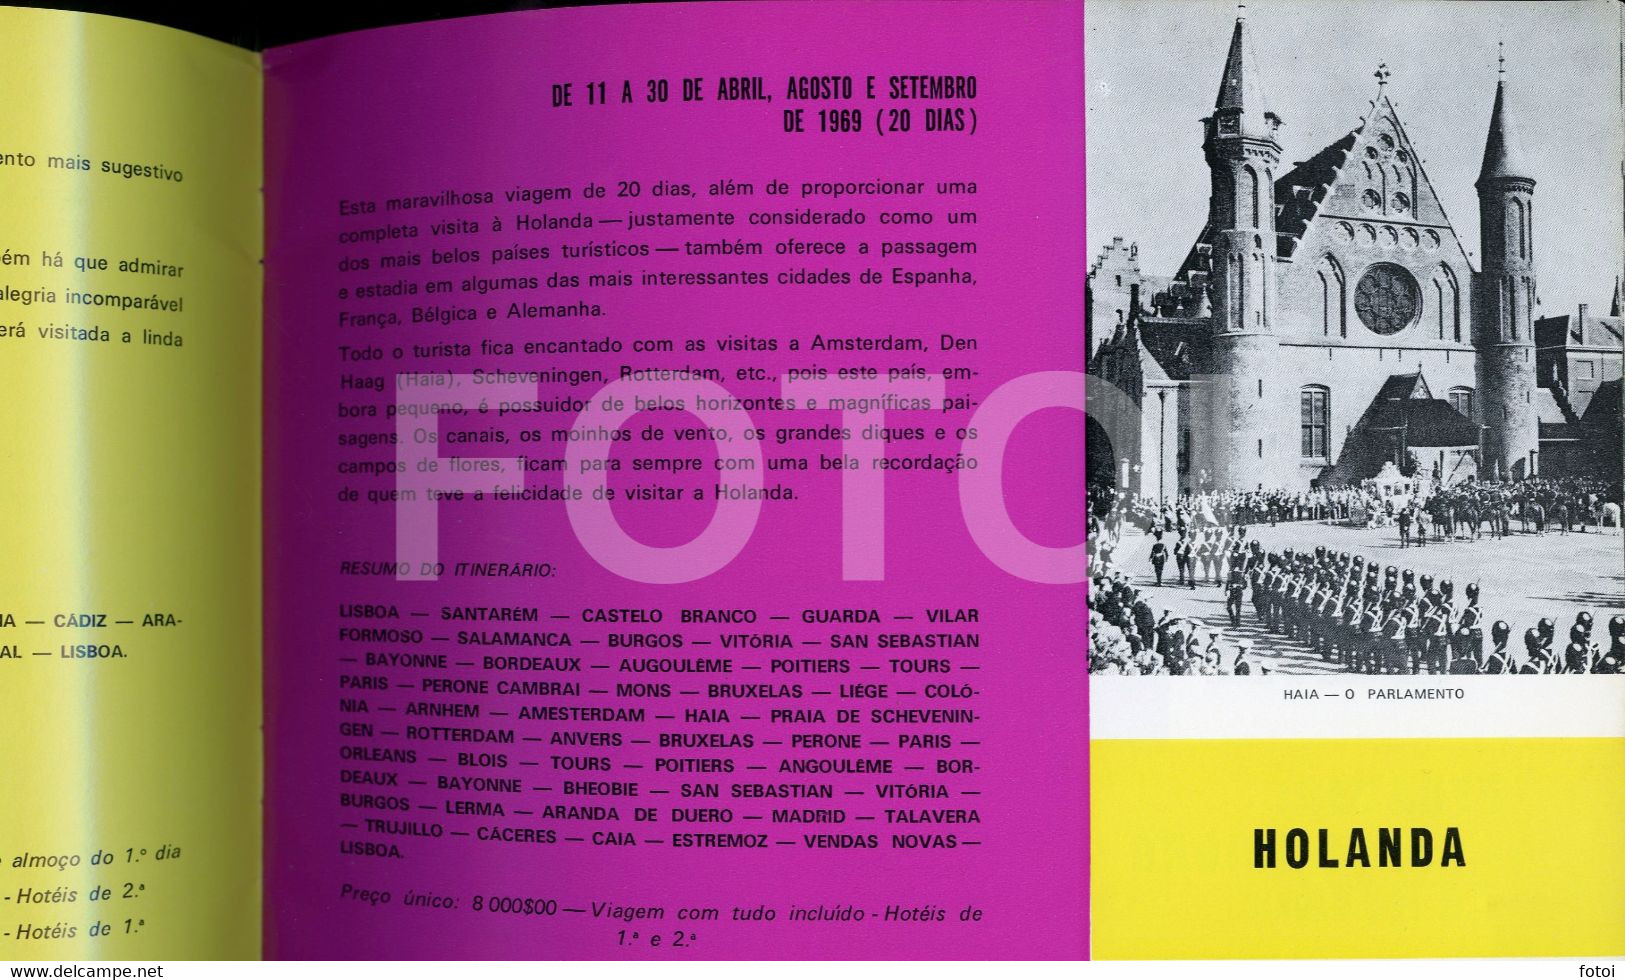 1969 PROGRAMA VIAGENS RODARTE AUTOCARRO BUS LEYLAND PORTUGAL CATALOGO - Europe